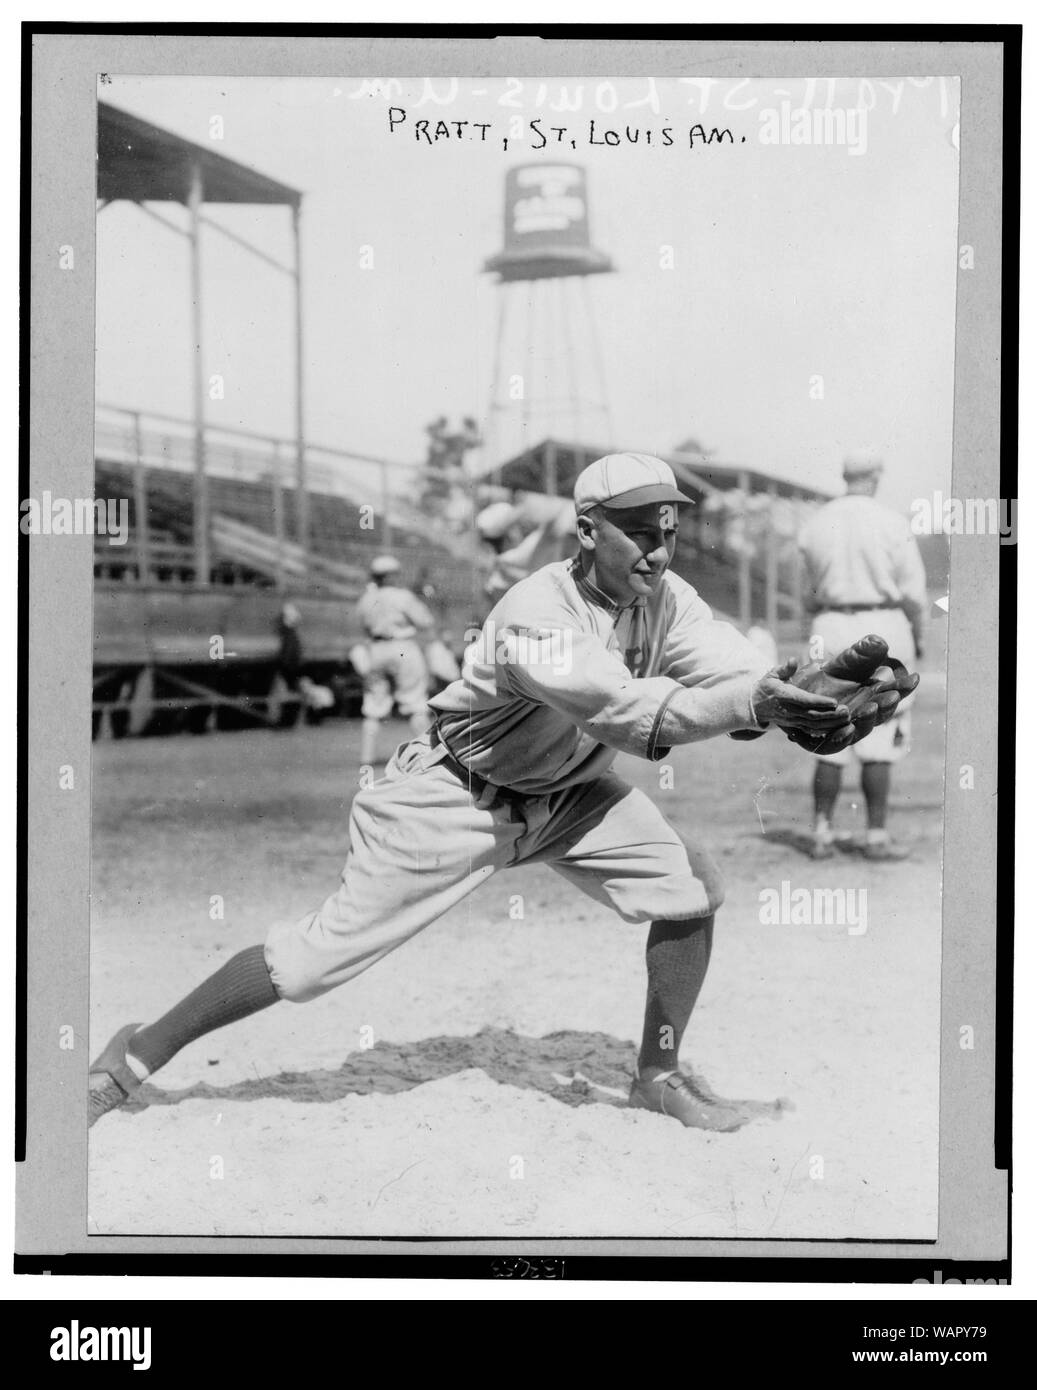 Derrill Burnham Del Pratt, Saint Louis Browns joueur de baseball, en uniforme, debout en position de recevoir jeté baseball Banque D'Images